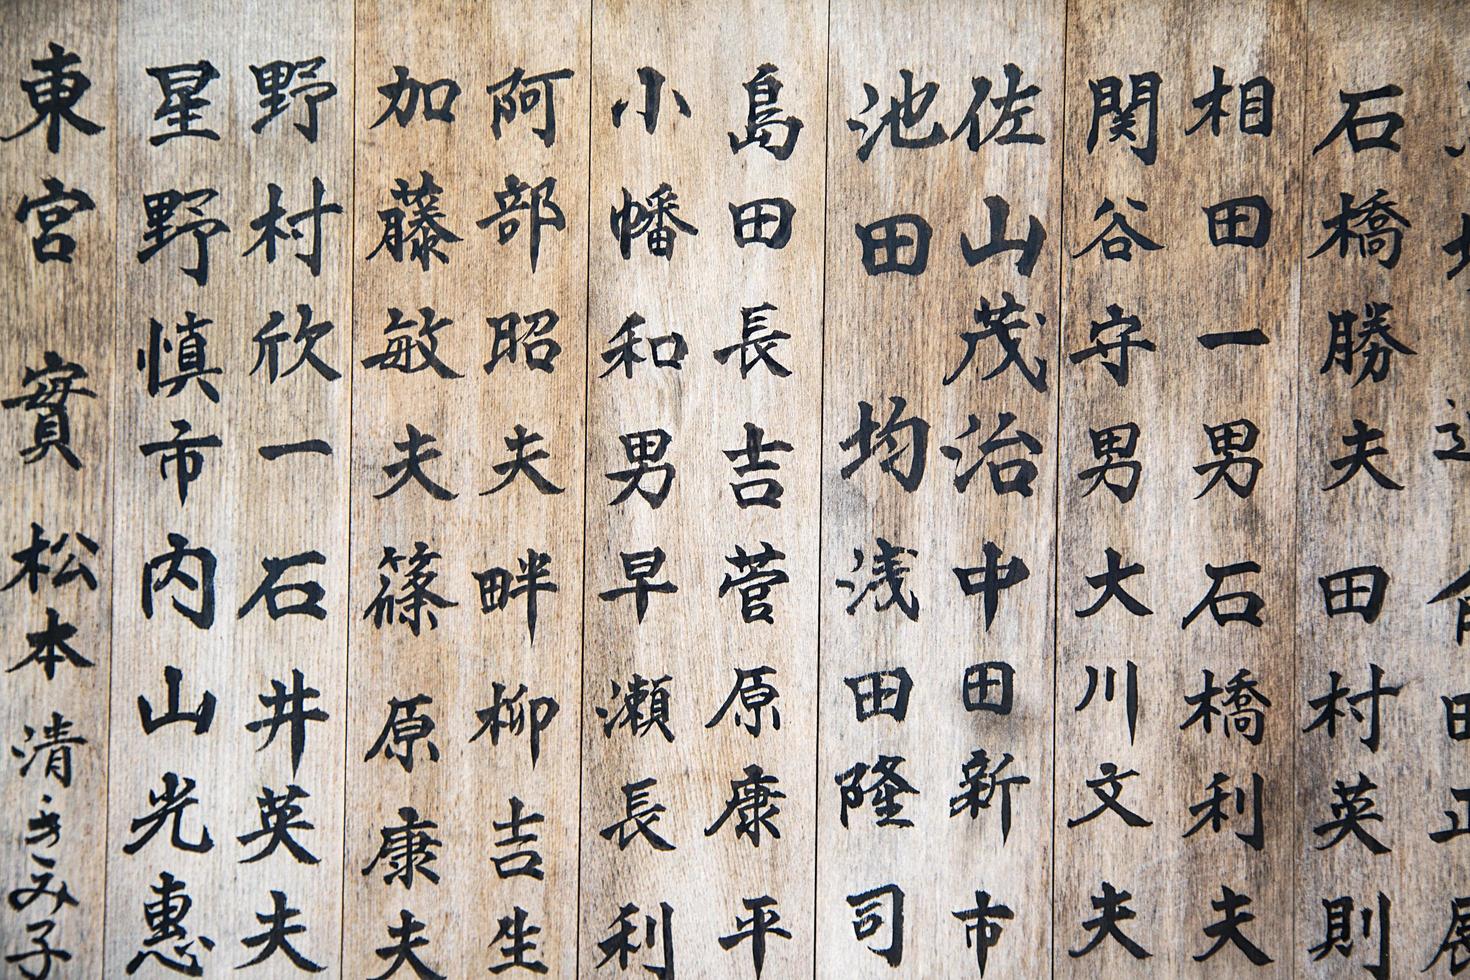 nikko, japan, 2016 - träskivor med japansk skrift utanför templet i nikko, japan. nikko helgedomar och tempel är Unescos världsarvslista foto